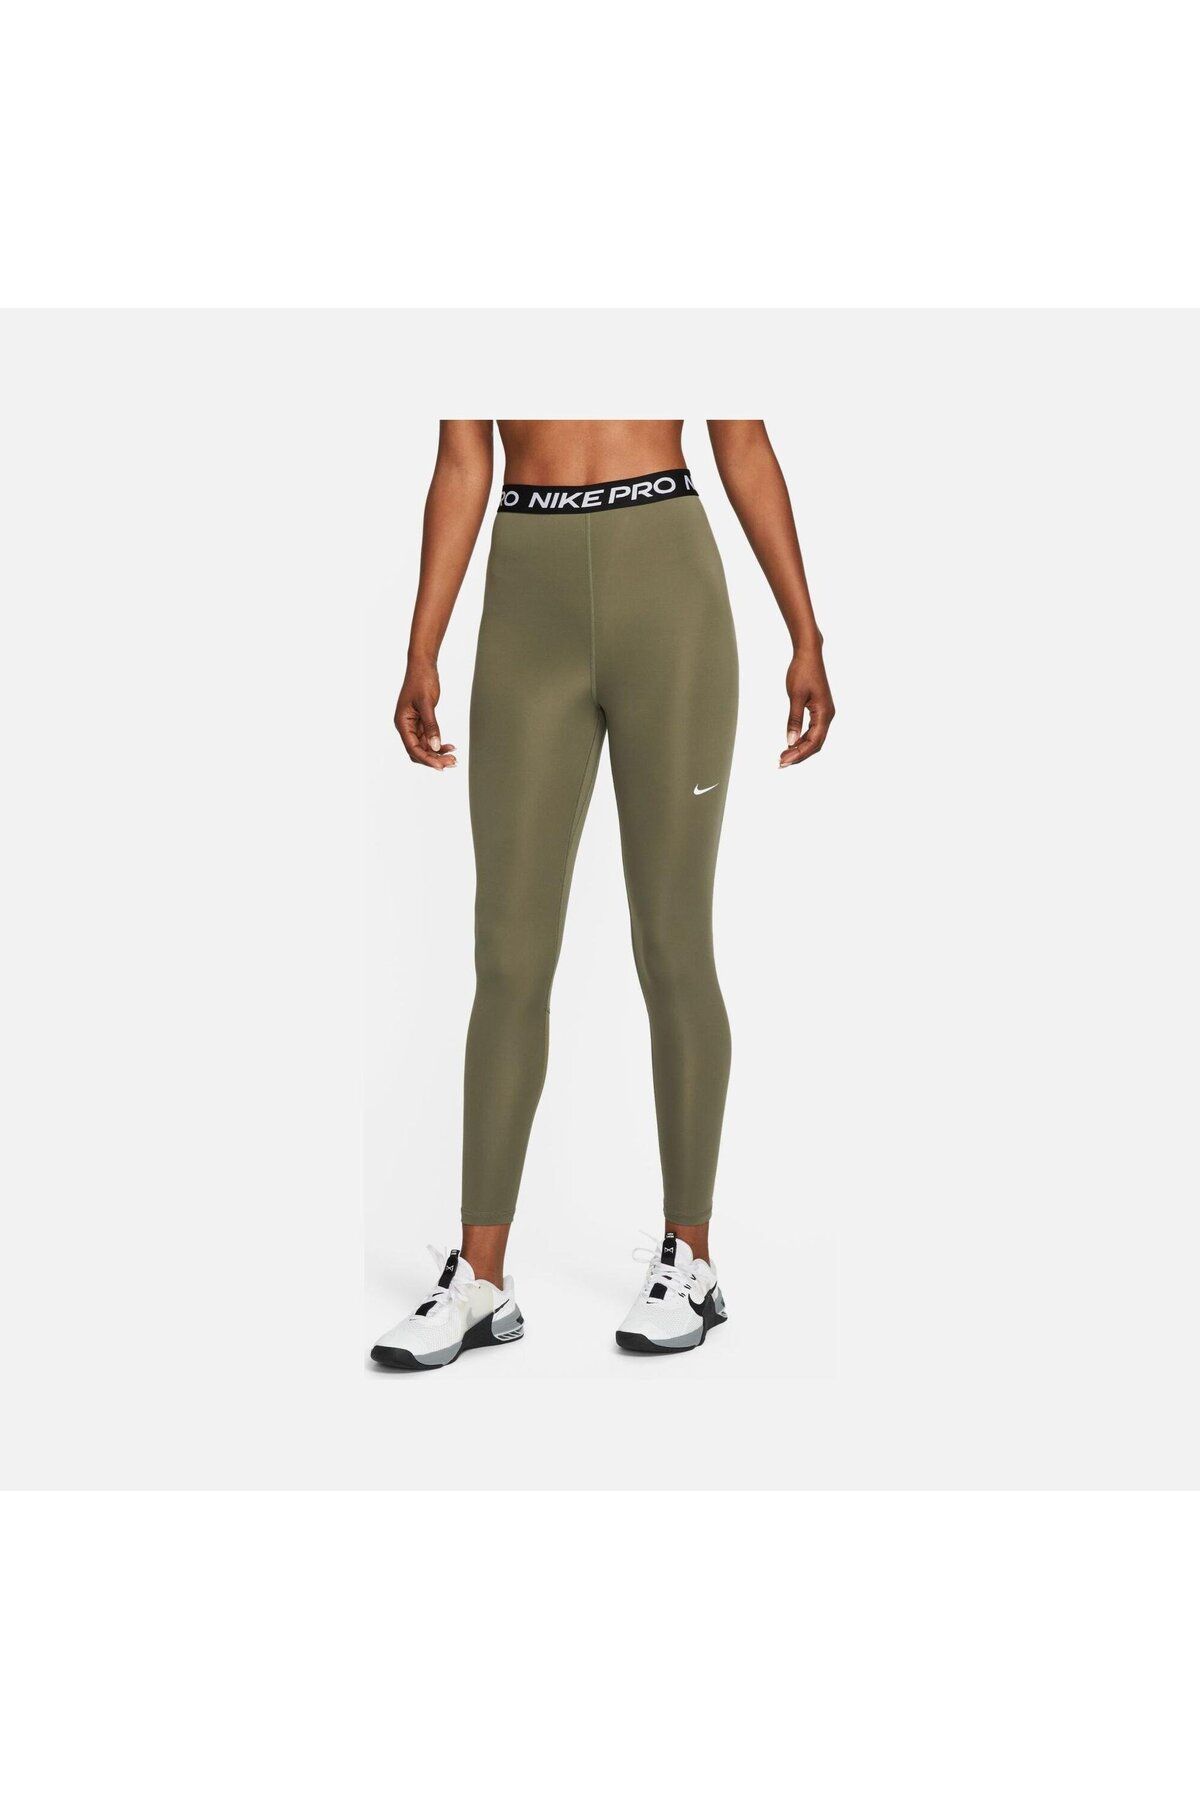 Nike Pro 365 Yüksek Belli 7/8 File Panelli Yeşil Kadın Tayt